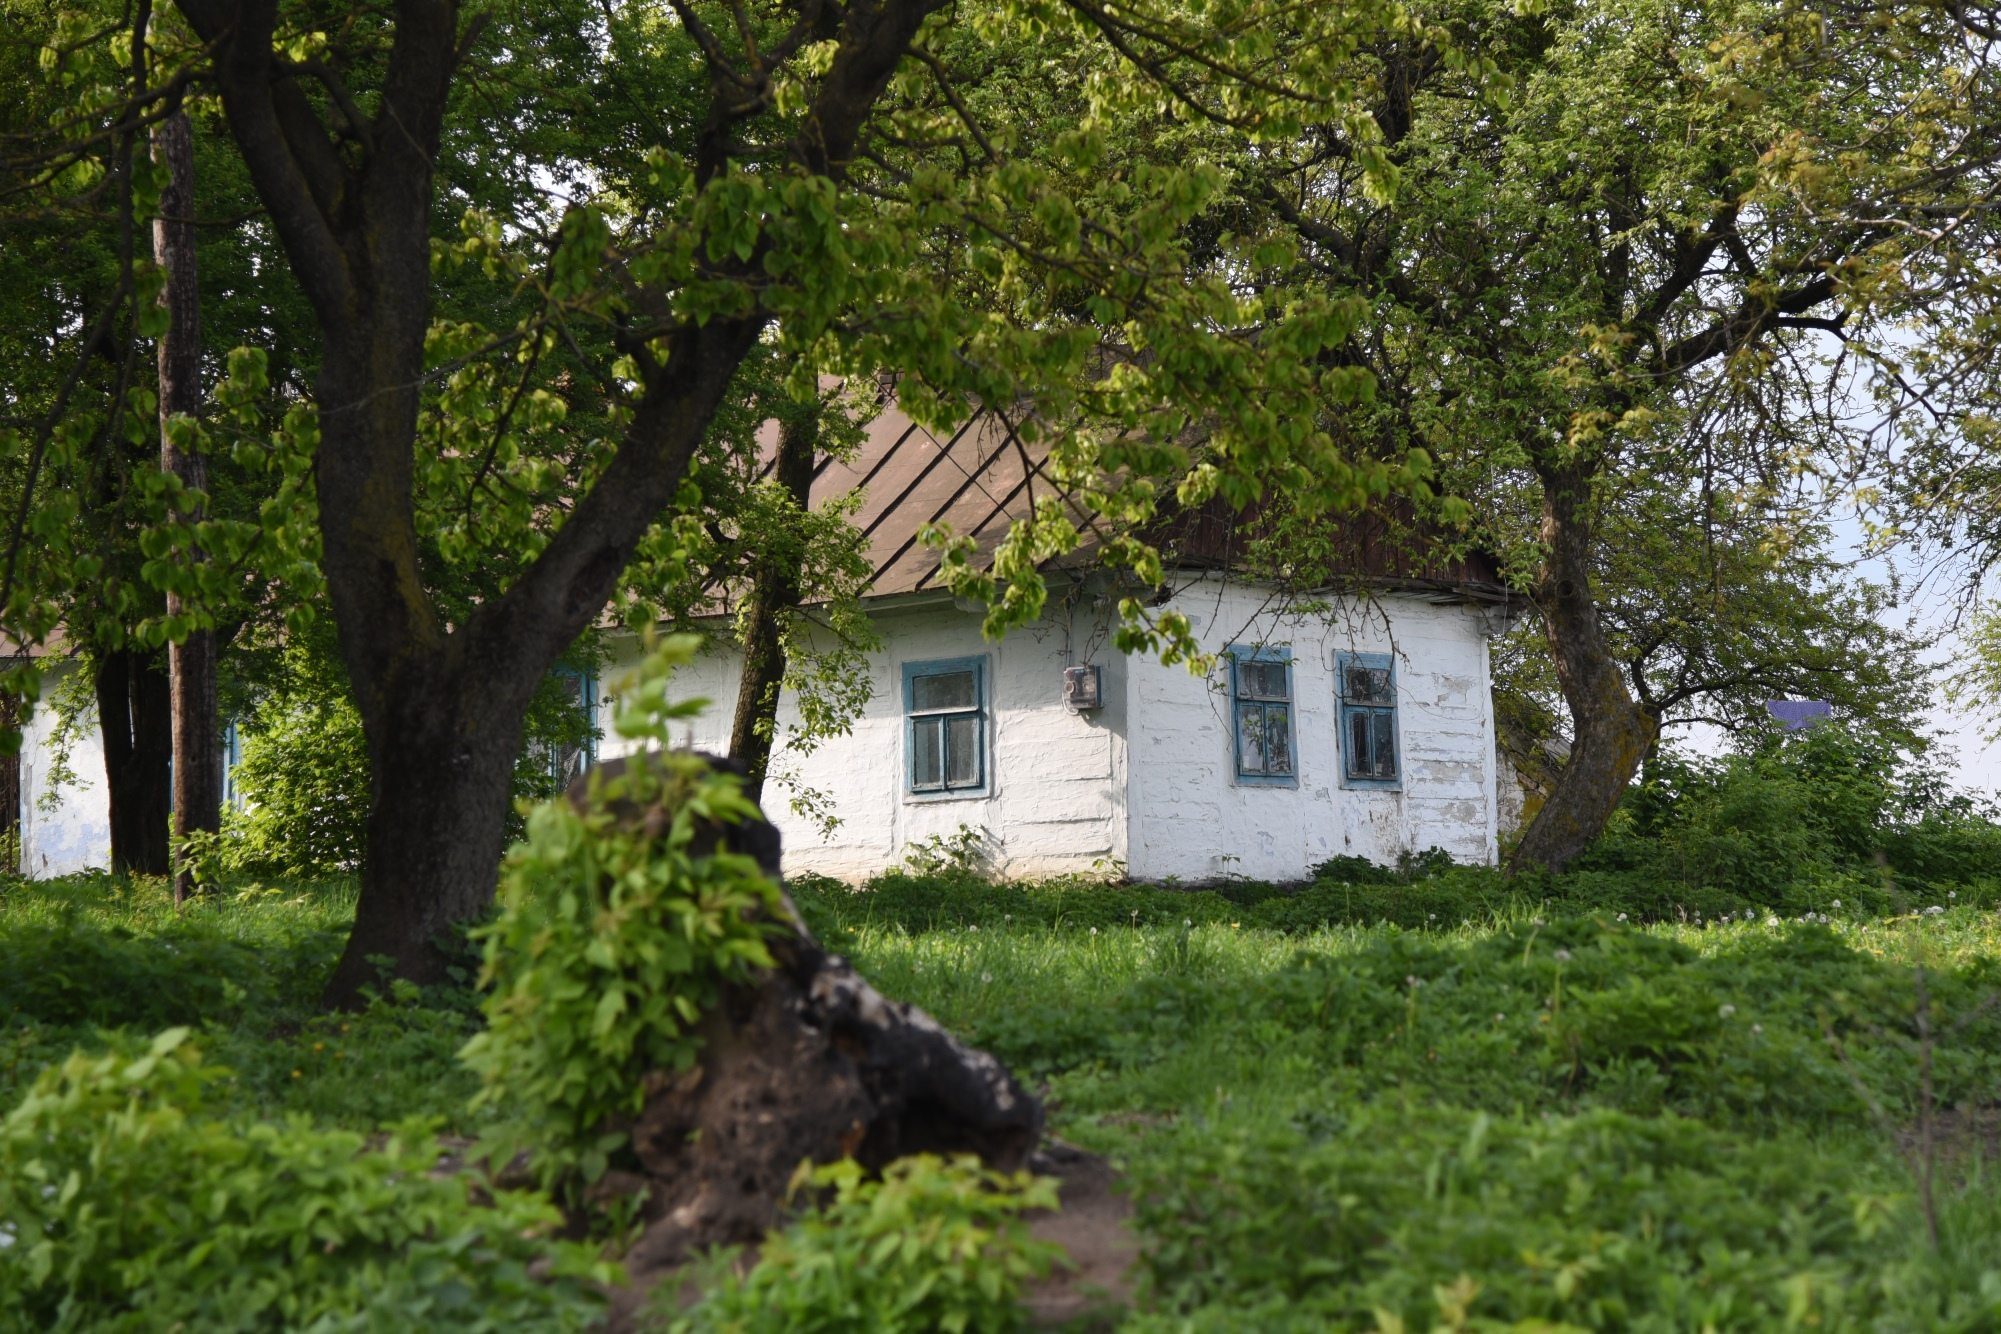 Ve Volyni na Ukrajině už často žádní Češi nežijí. Zůstaly tam po nich ale domy,  kostely,  hasičské zbrojnice nebo hřbitovy